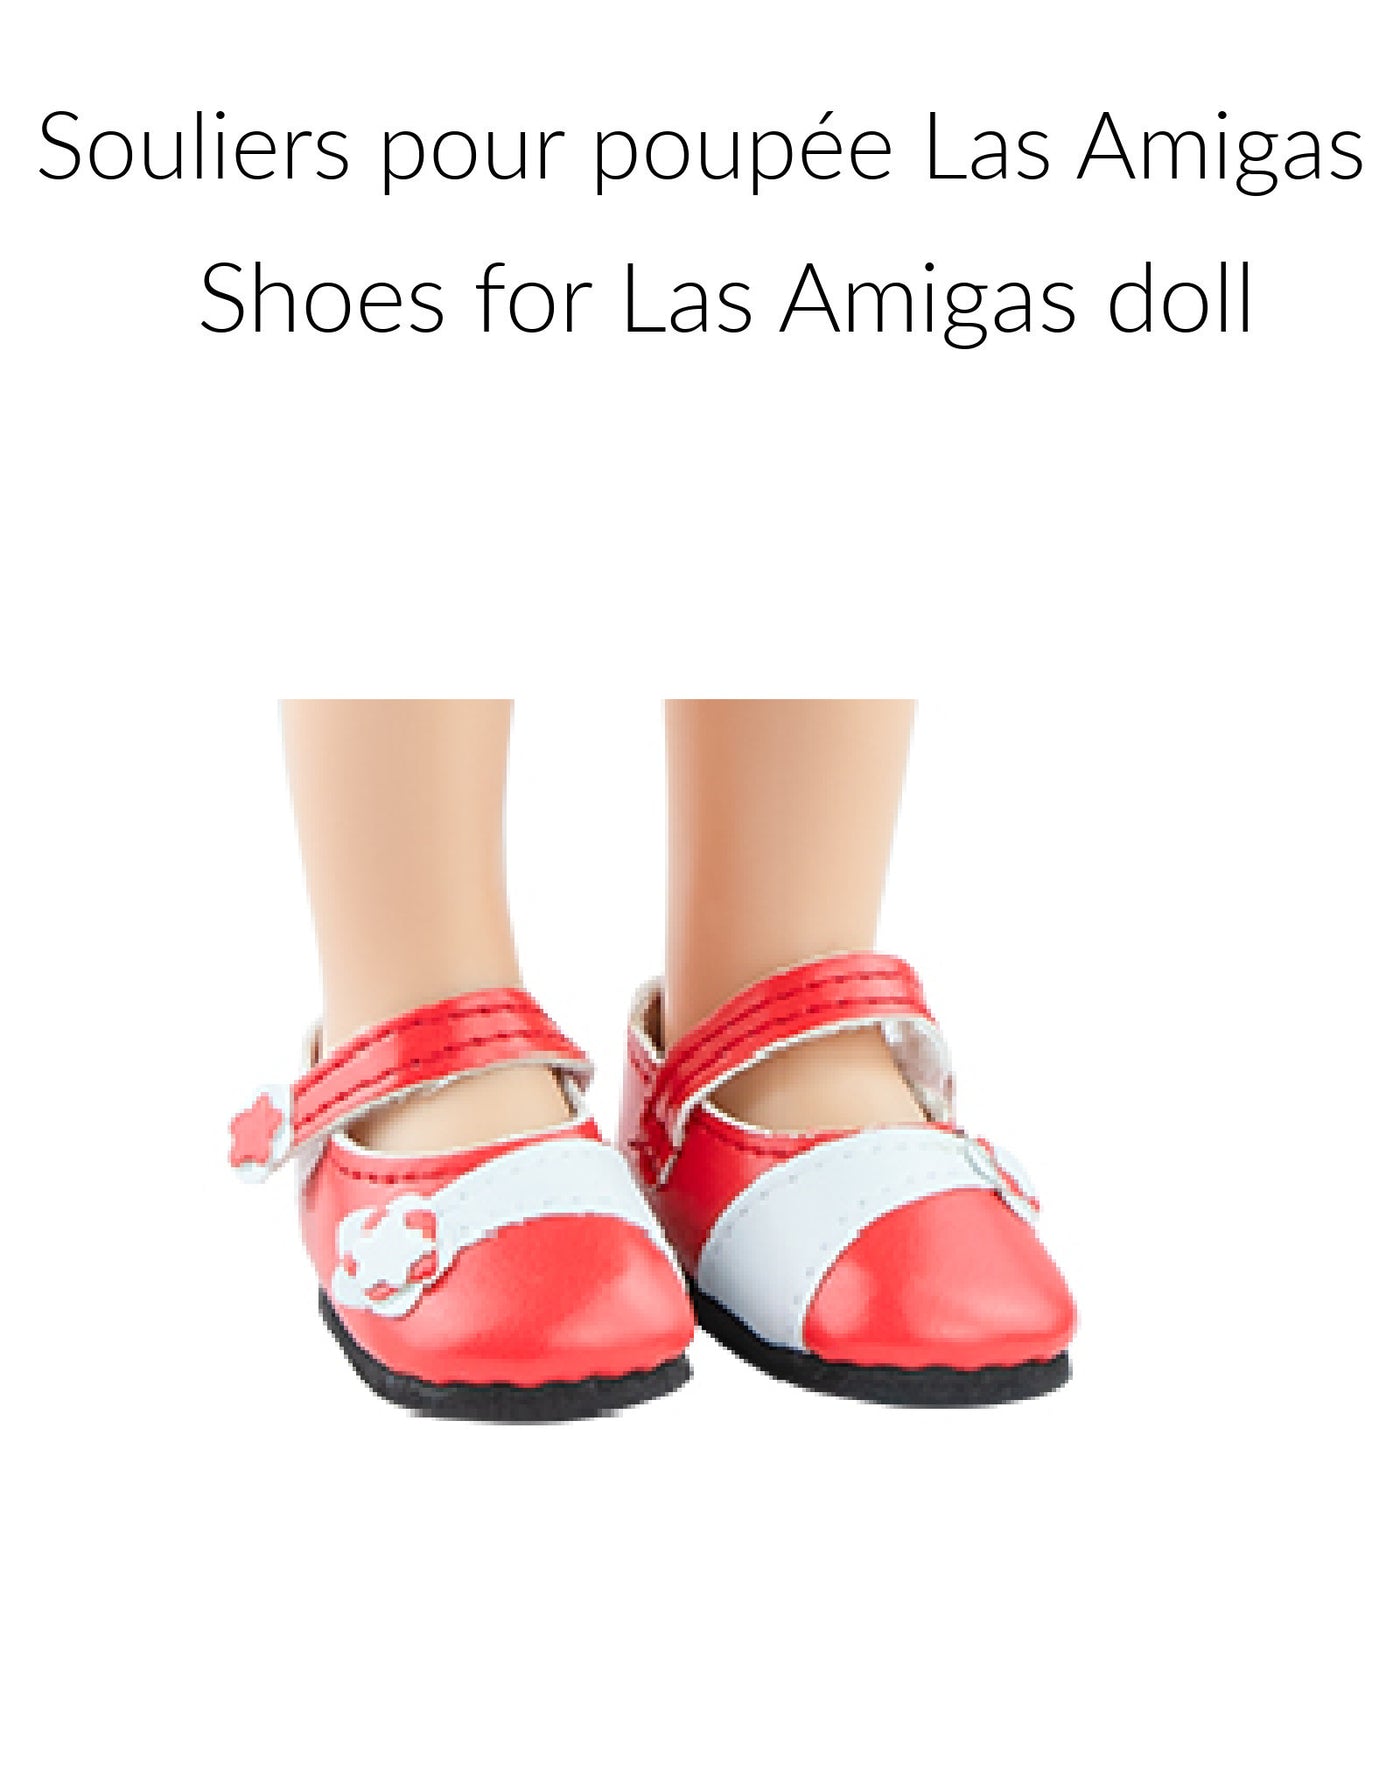 Souliers pour poupée Las Amigas - Chaussures rouge - Paola Reina